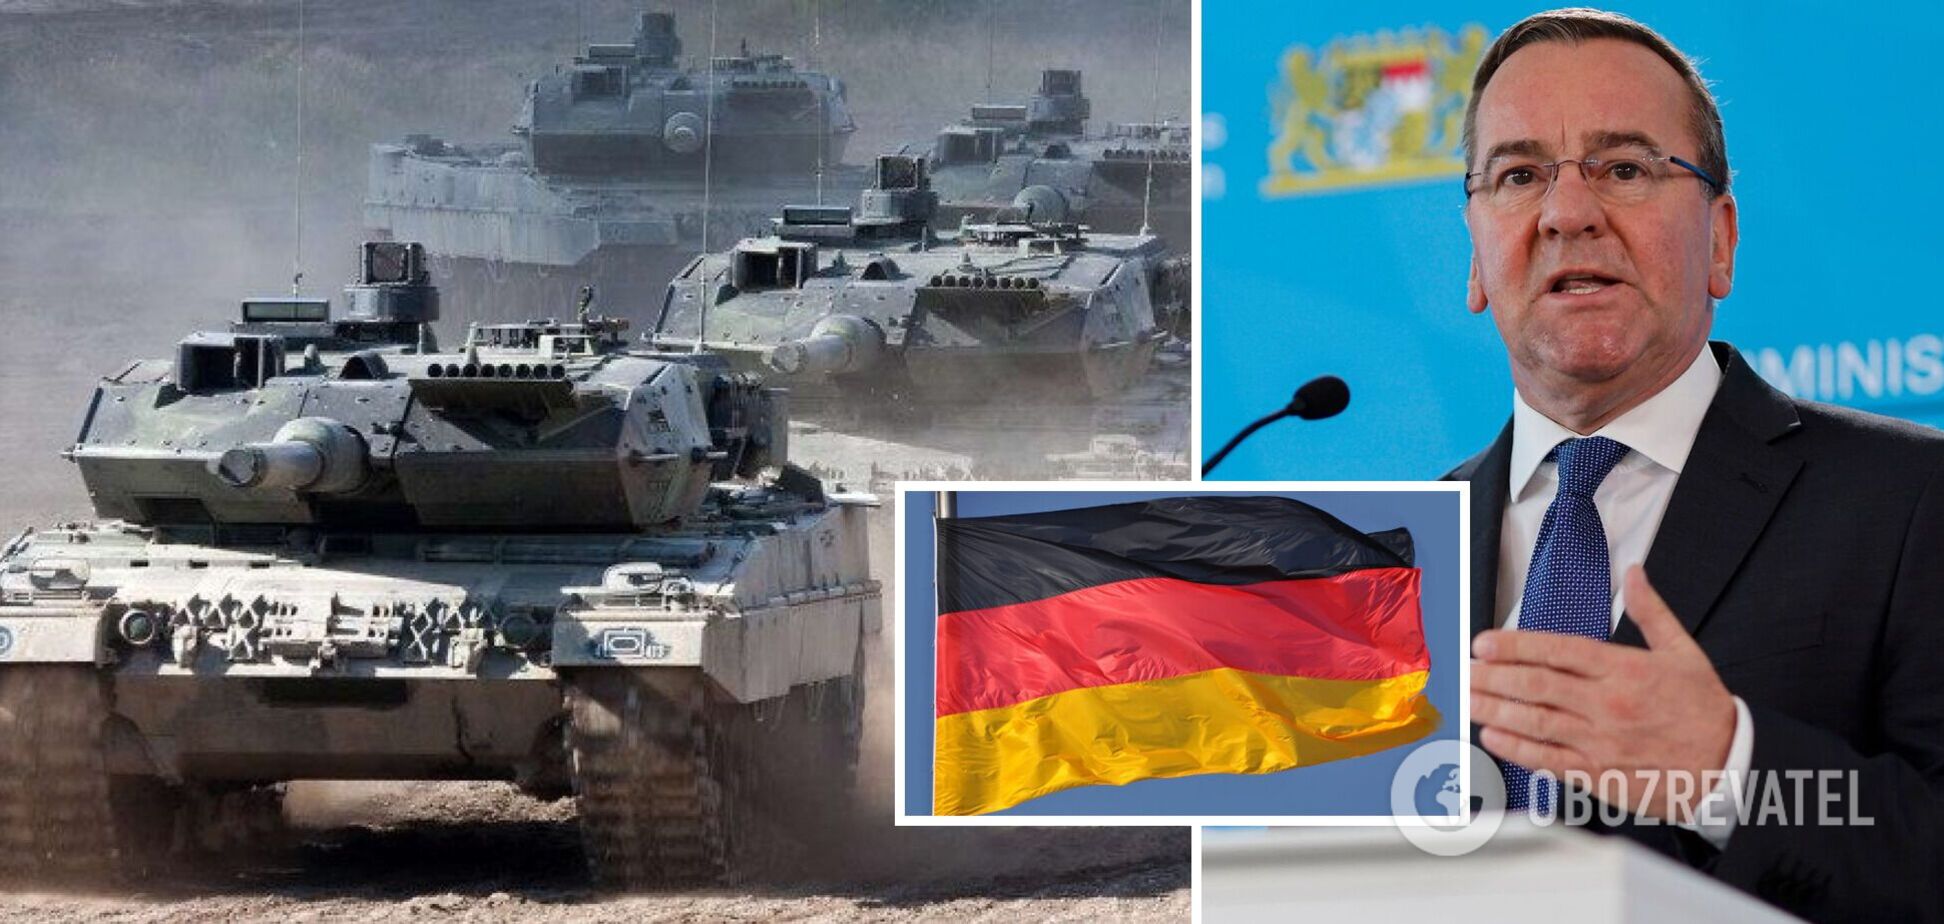 В Германии обещают, что новый министр обороны первым вопросом решит передачу танков Leopard 2 Украине